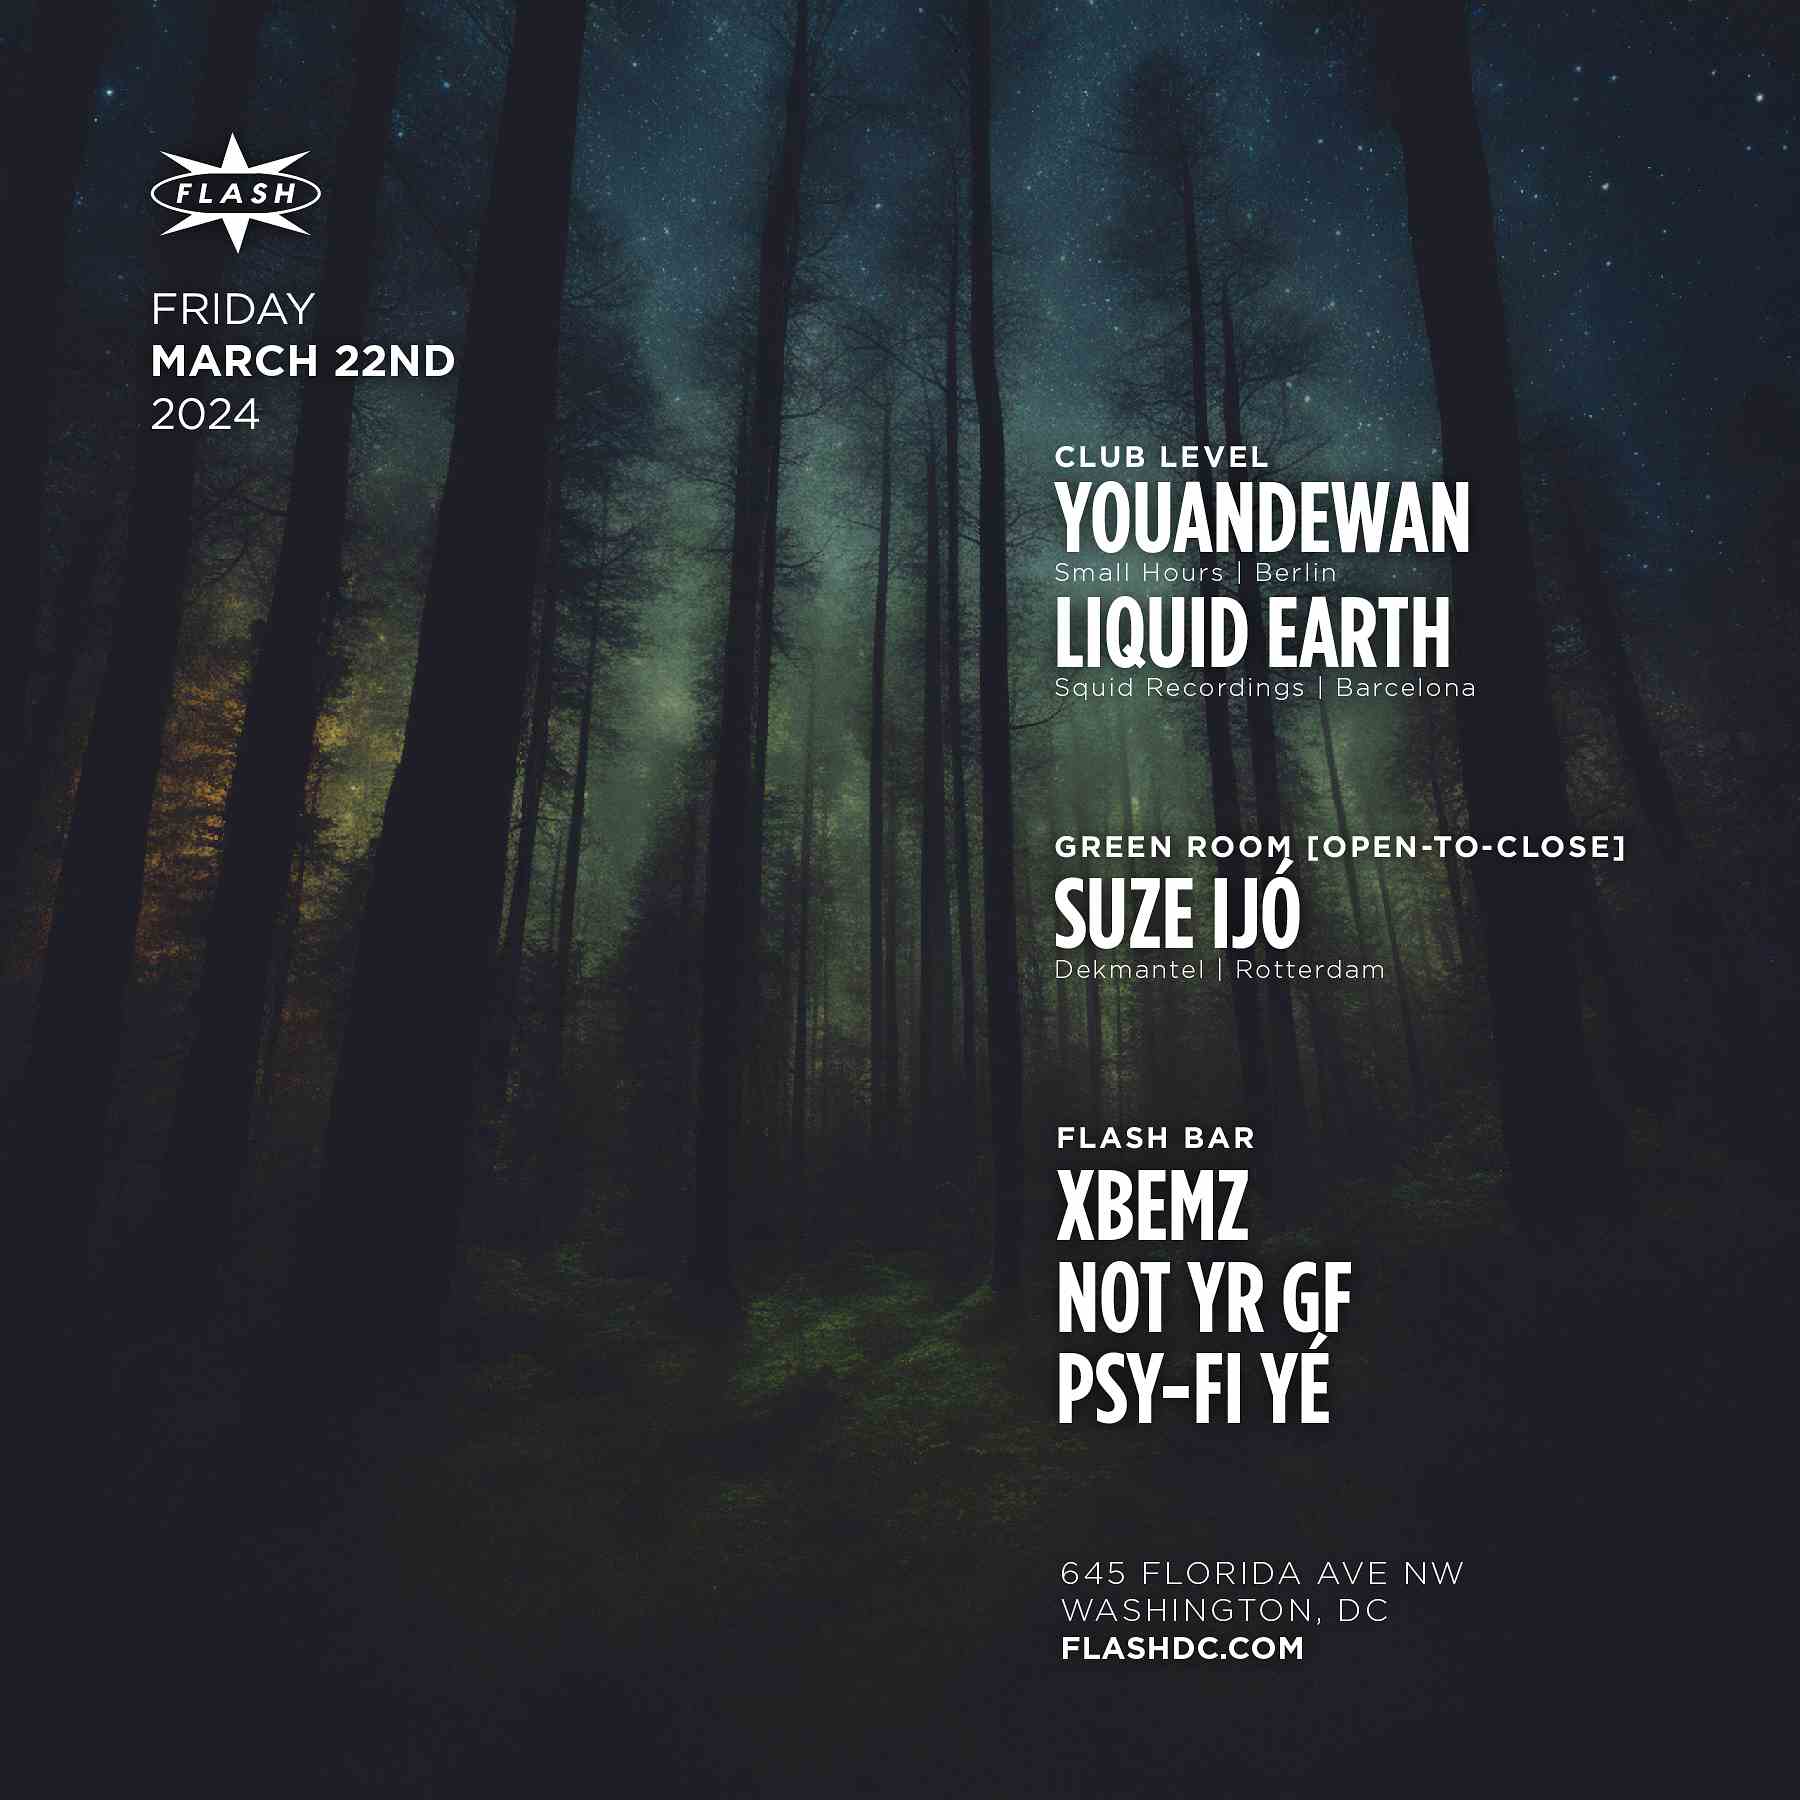 Youandewan - Liquid Earth event flyer